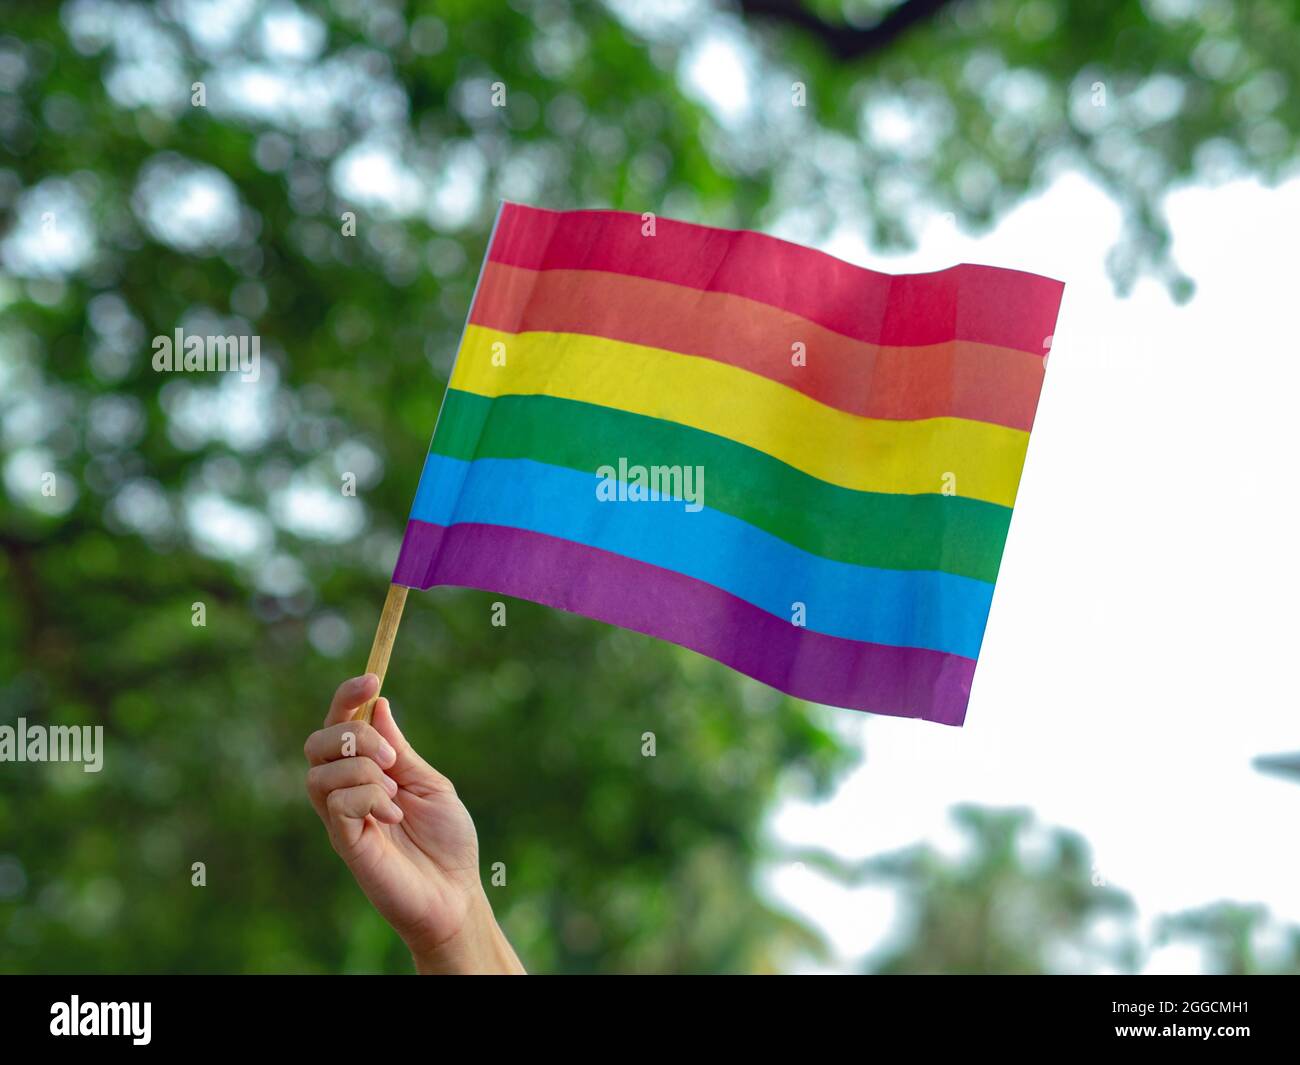 Eine Hand hält eine kleine Regenbogenfahne zur Unterstützung der LGBTQ-Bewegung, im Hintergrund grüne Bäume. Stockfoto